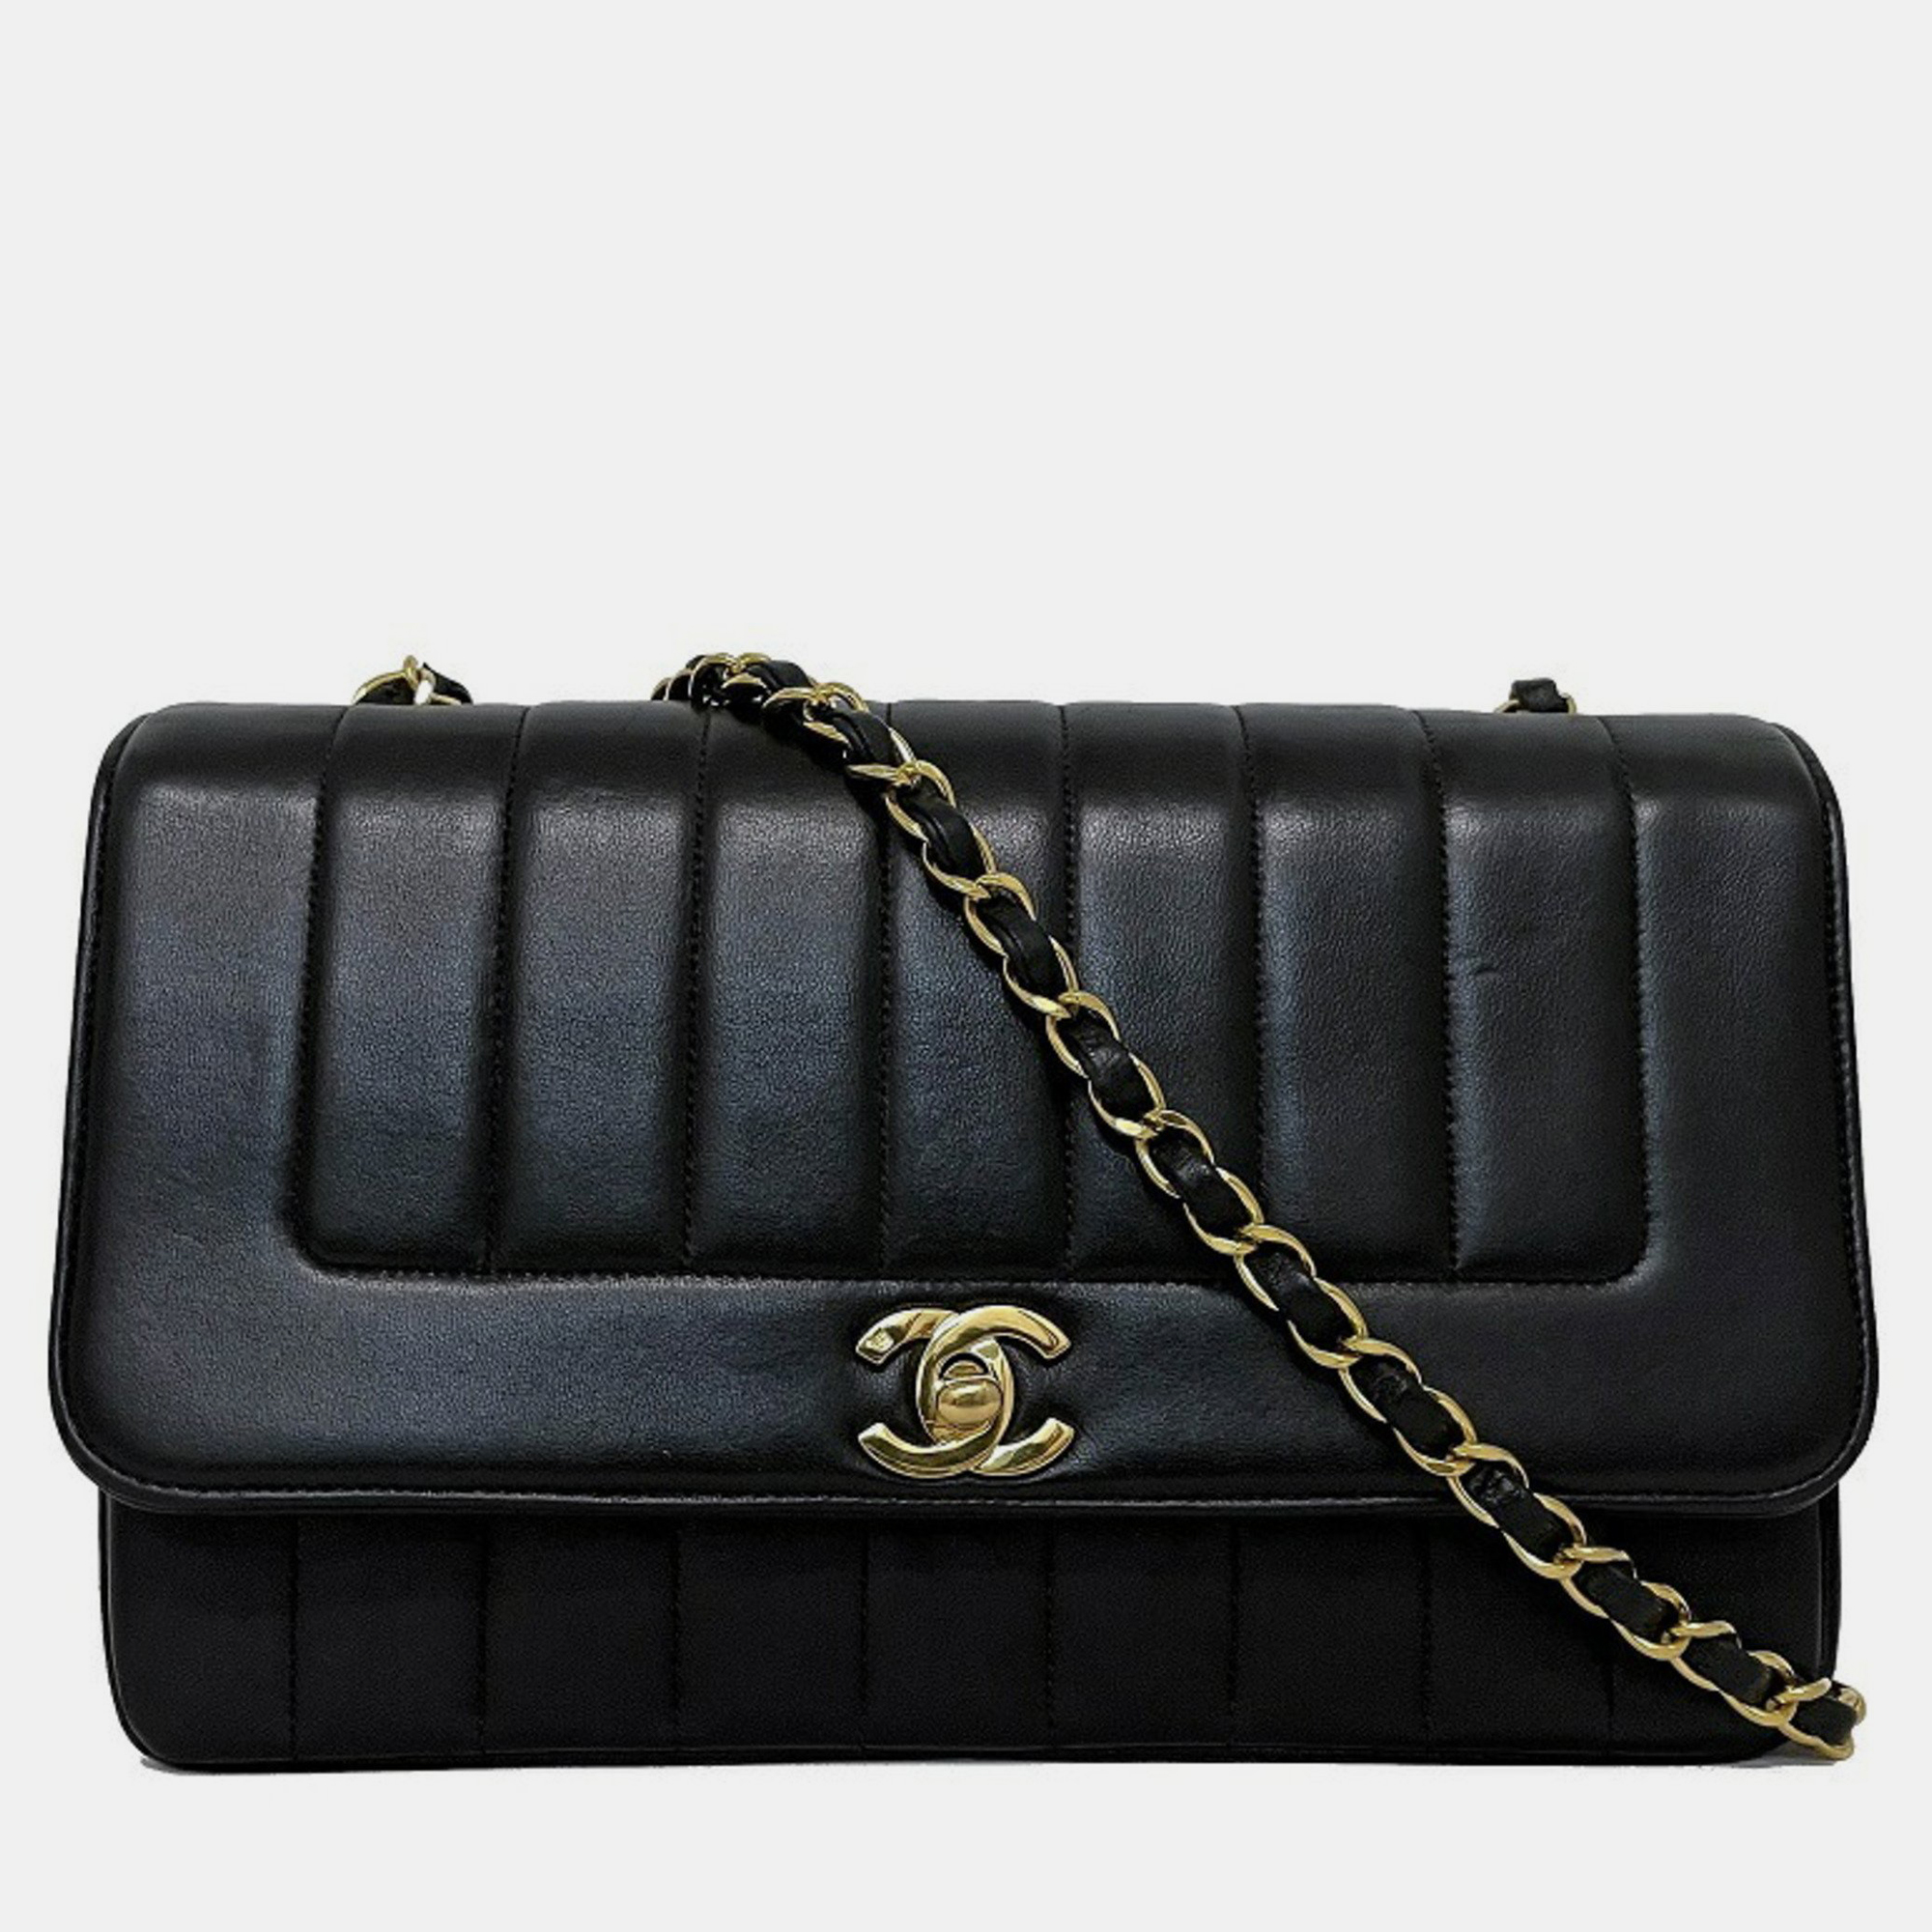 Chanel black leather  mademoiselle shoulder bag